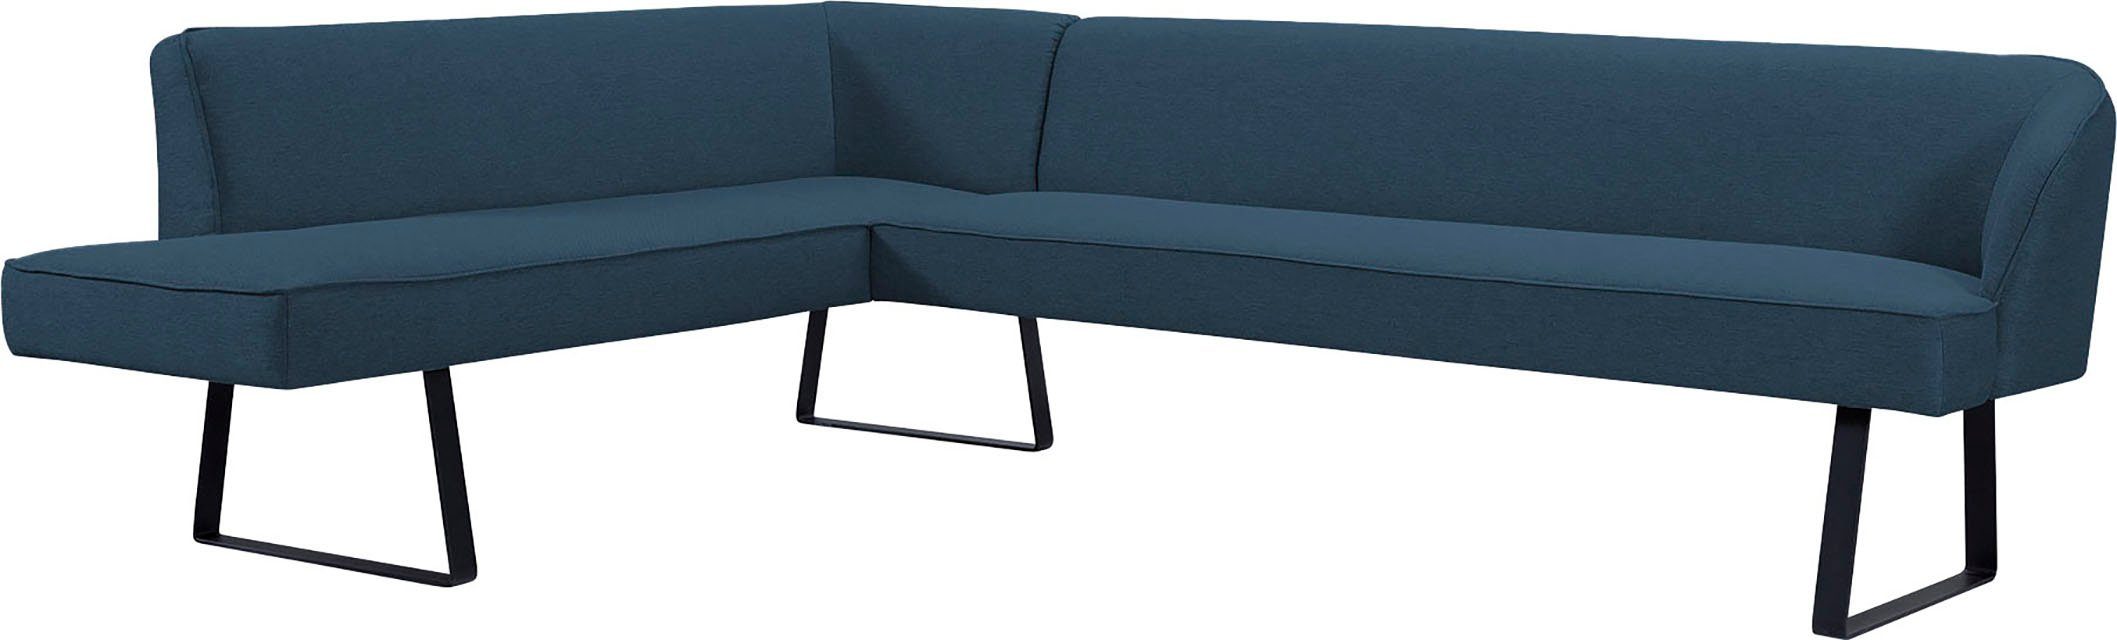 exxpo - sofa fashion Eckbank verschiedenen in mit Keder und Metallfüßen, Americano, Bezug Qualitäten